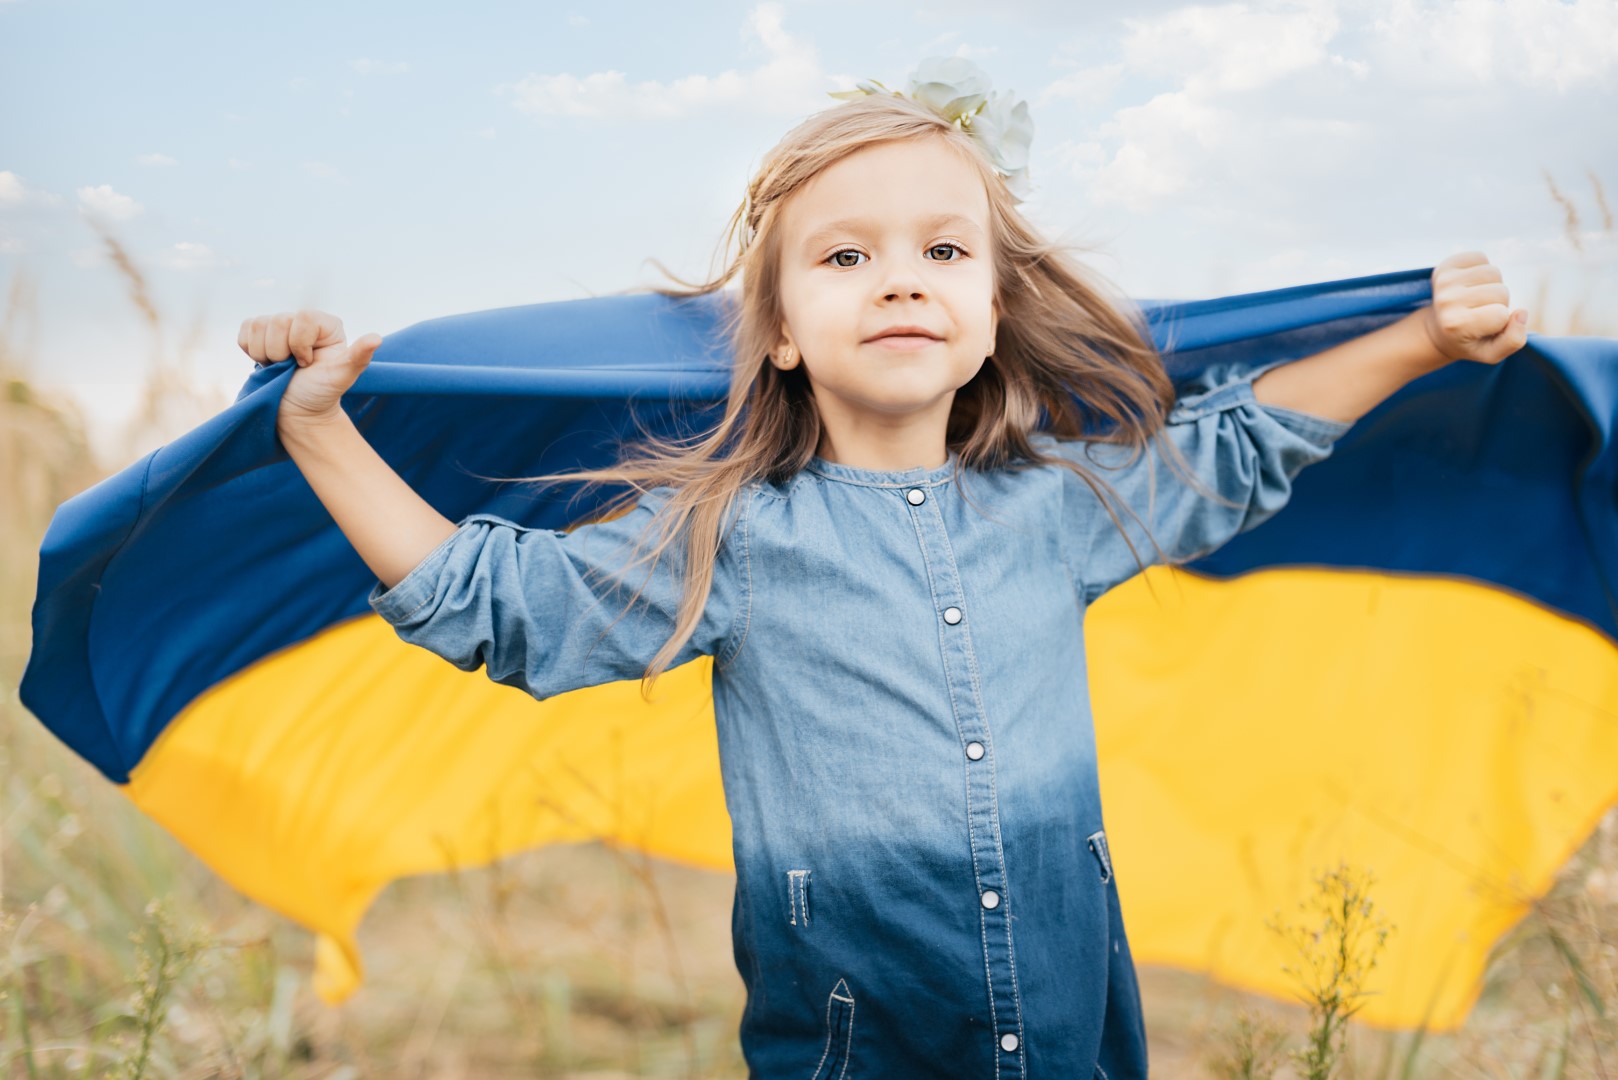 Kinder in der Ukraine brauchen uns dringend